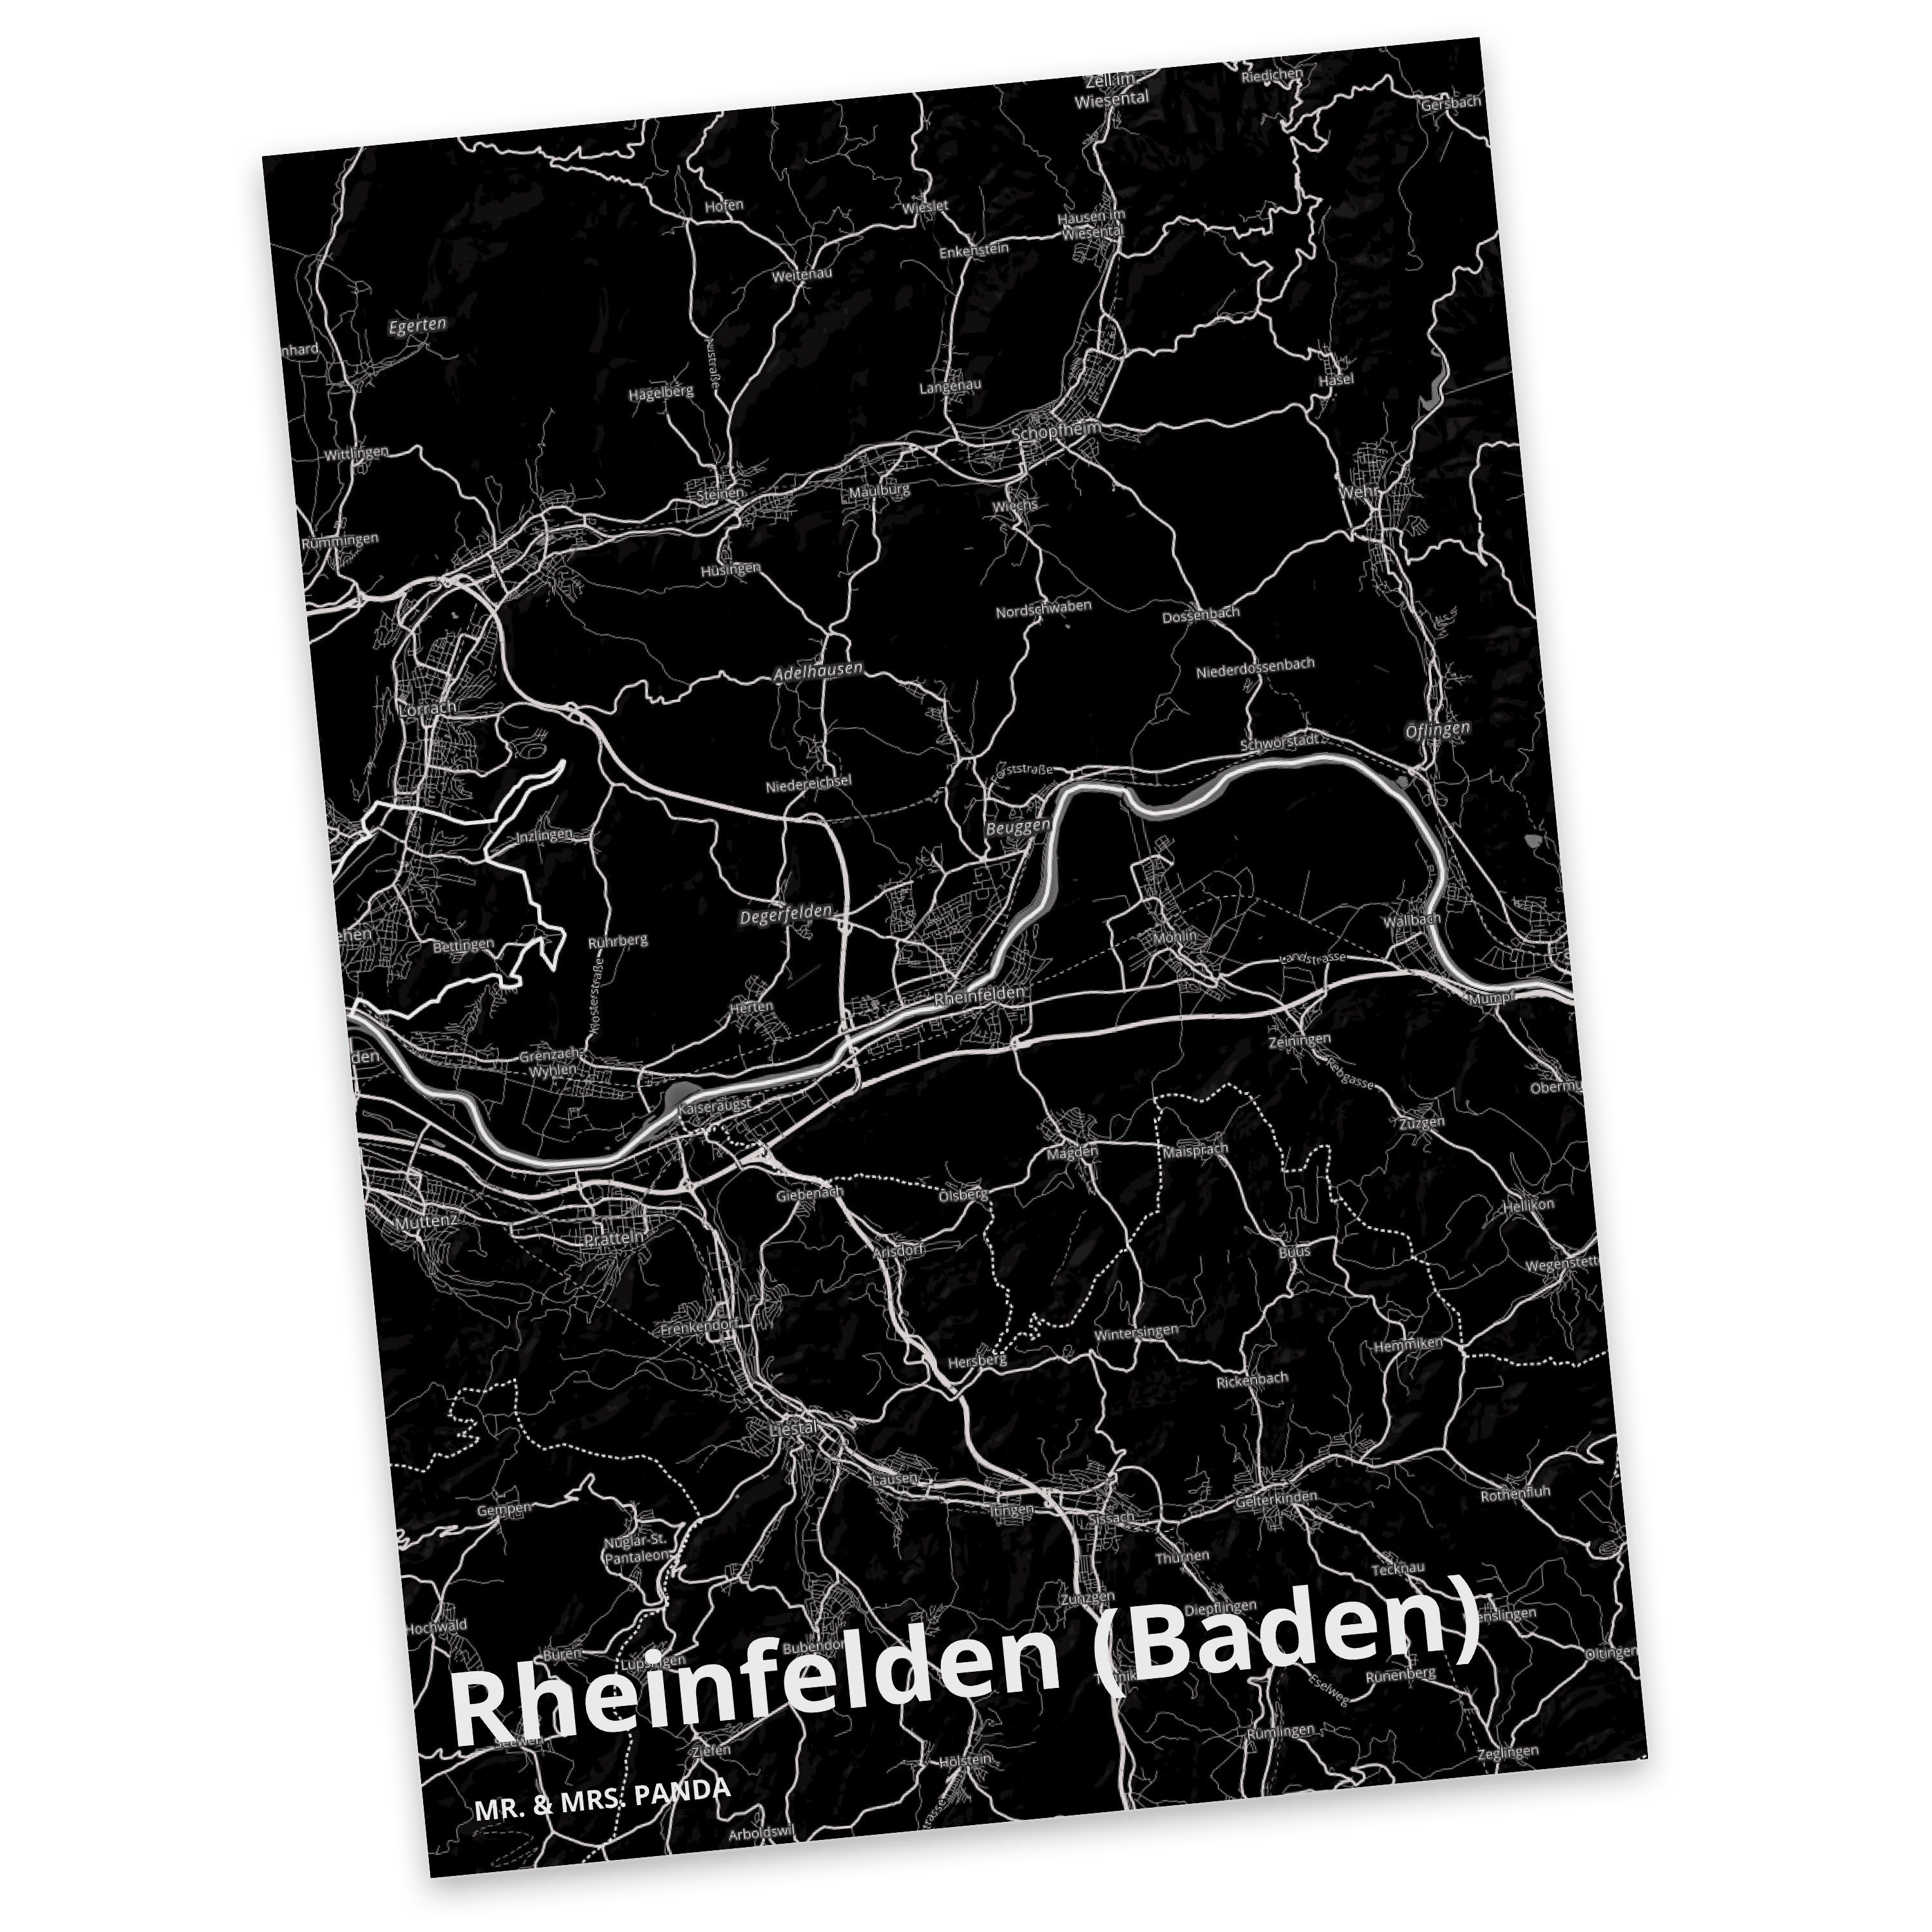 Panda Geburtstagskarte, (Baden) Rheinfelden Geschenk, Postkarte Mr. Ort, Stadt, & Dorf, Mrs. - S